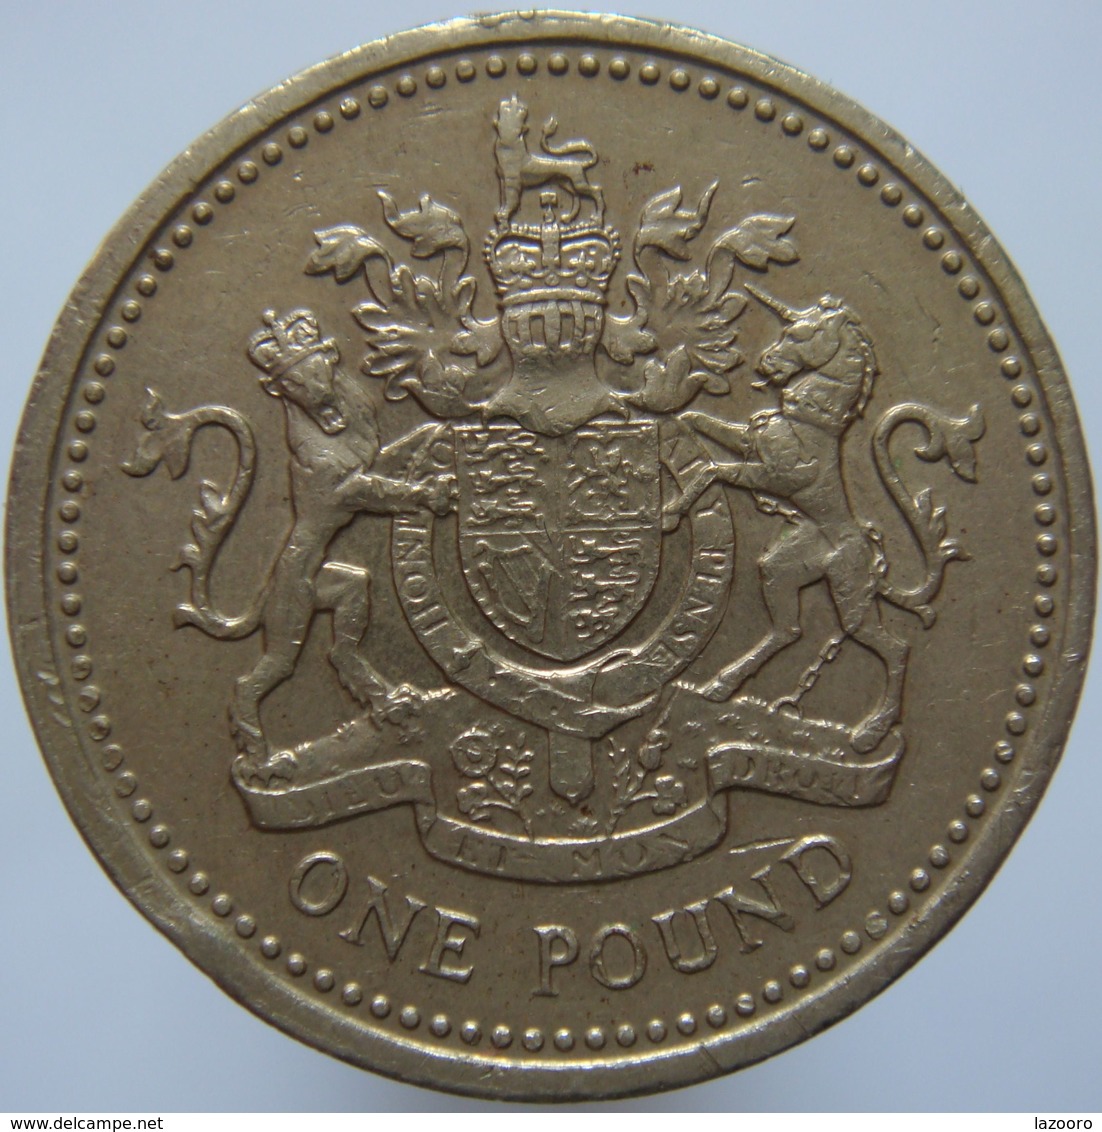 Great Britain 1 Pound 1983 F / VF - 1 Pound